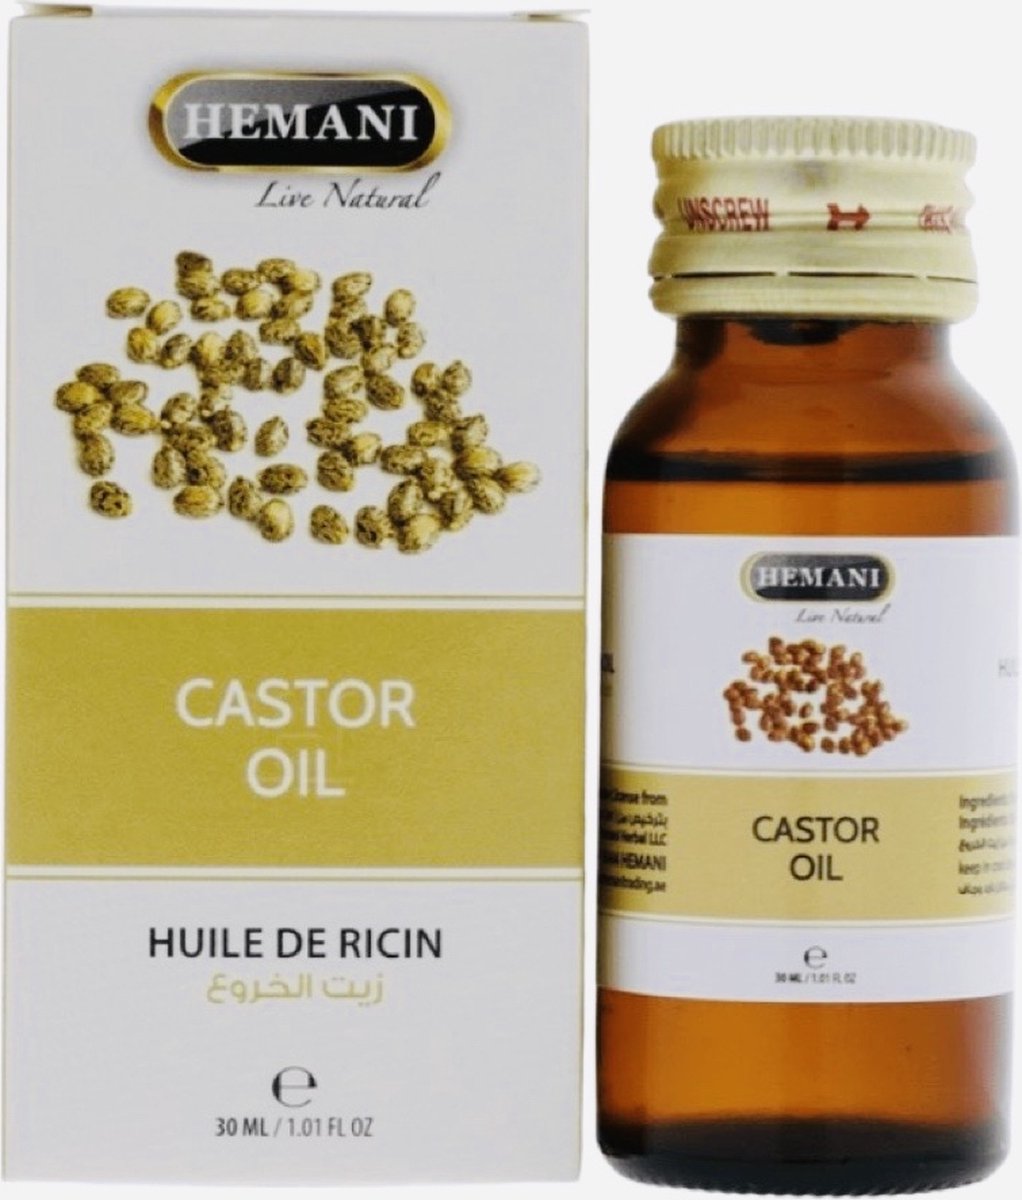 GoodUse Export Hemani Castor Oil 30ml - Castor olie - Haarverzorging - Voedingsrijk - Haarbehandeling - Haar Glans - Hoofdhuid - Haargroei - Haarroos - Antioxidant - Ontstekingsremmend - Rugpijn - Constipatie - Wimpergroei - Huid - Wenkbrauwen